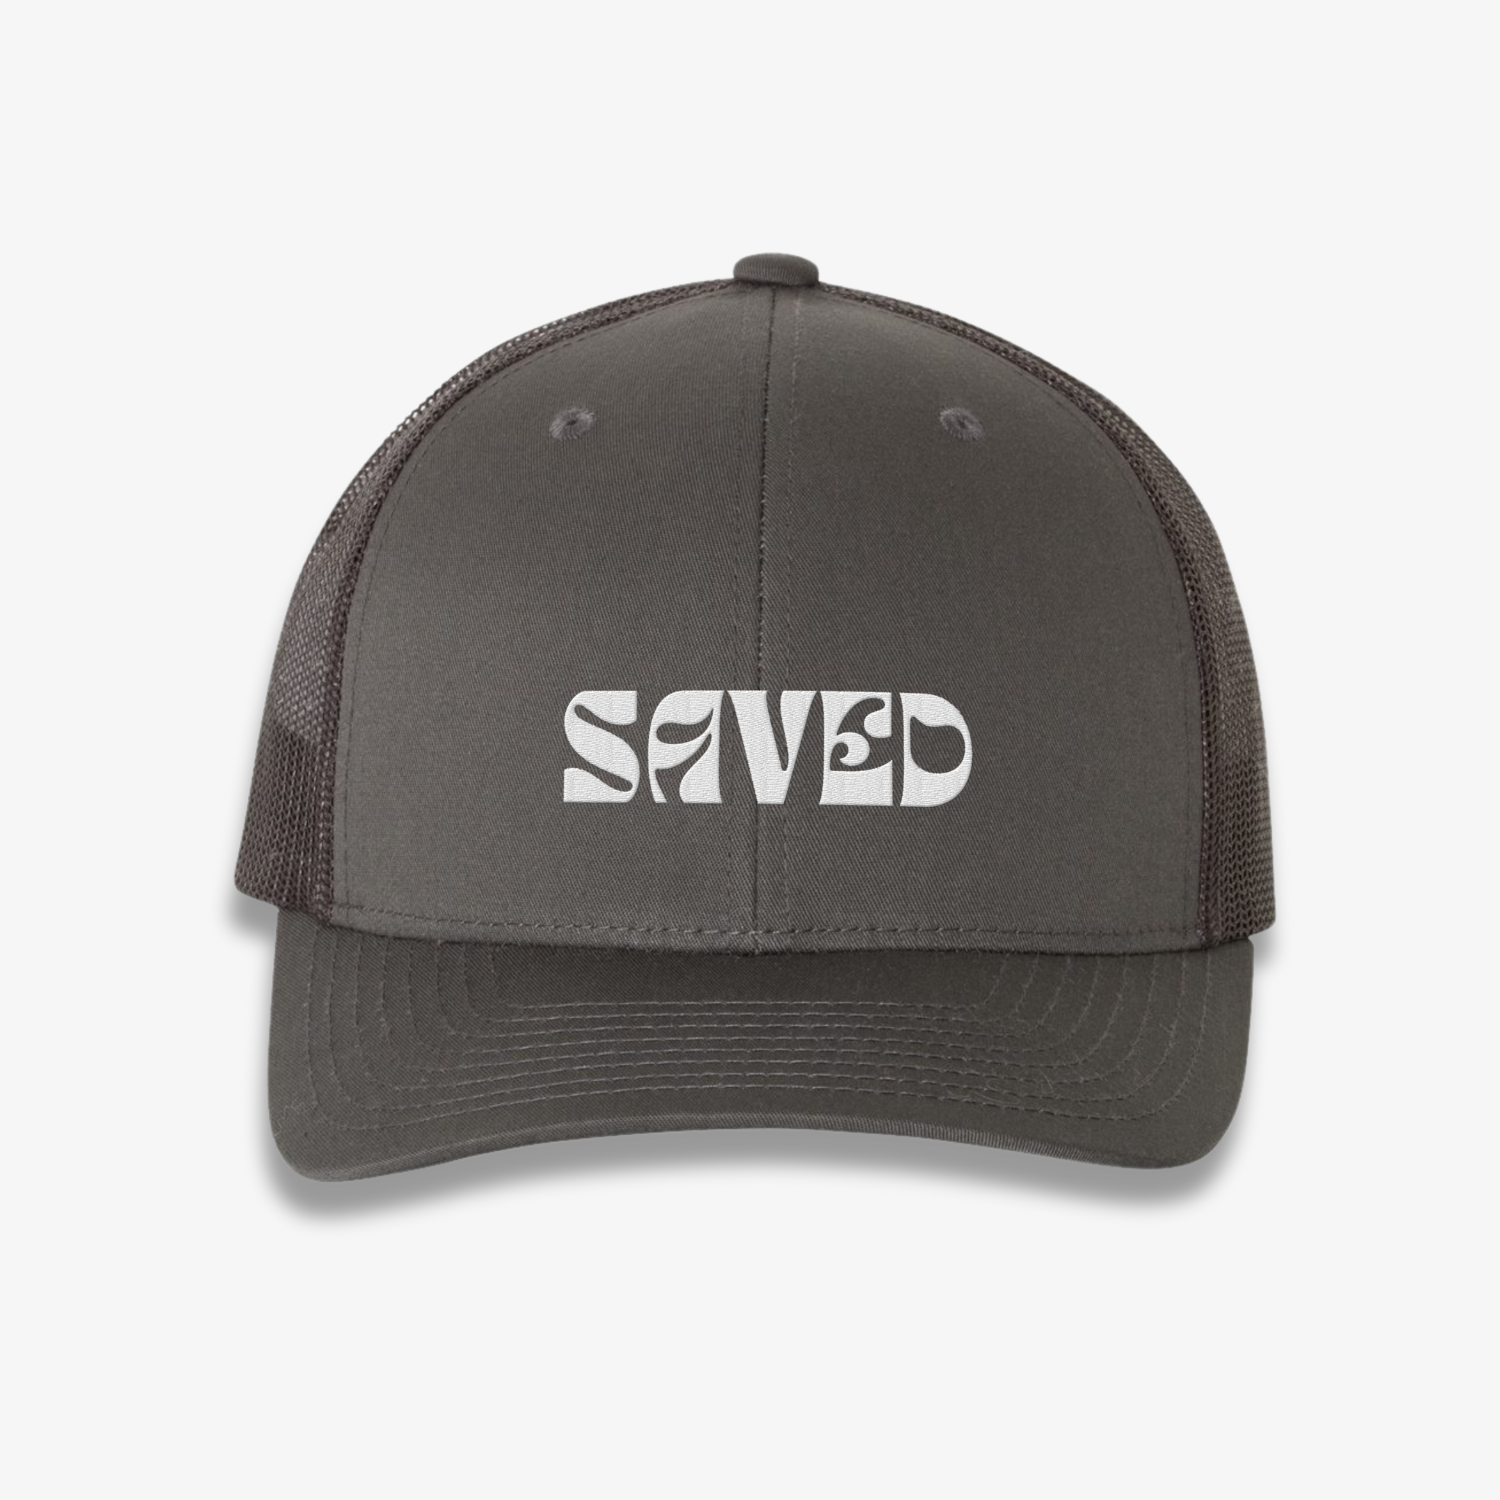 Saved Trucker Hat